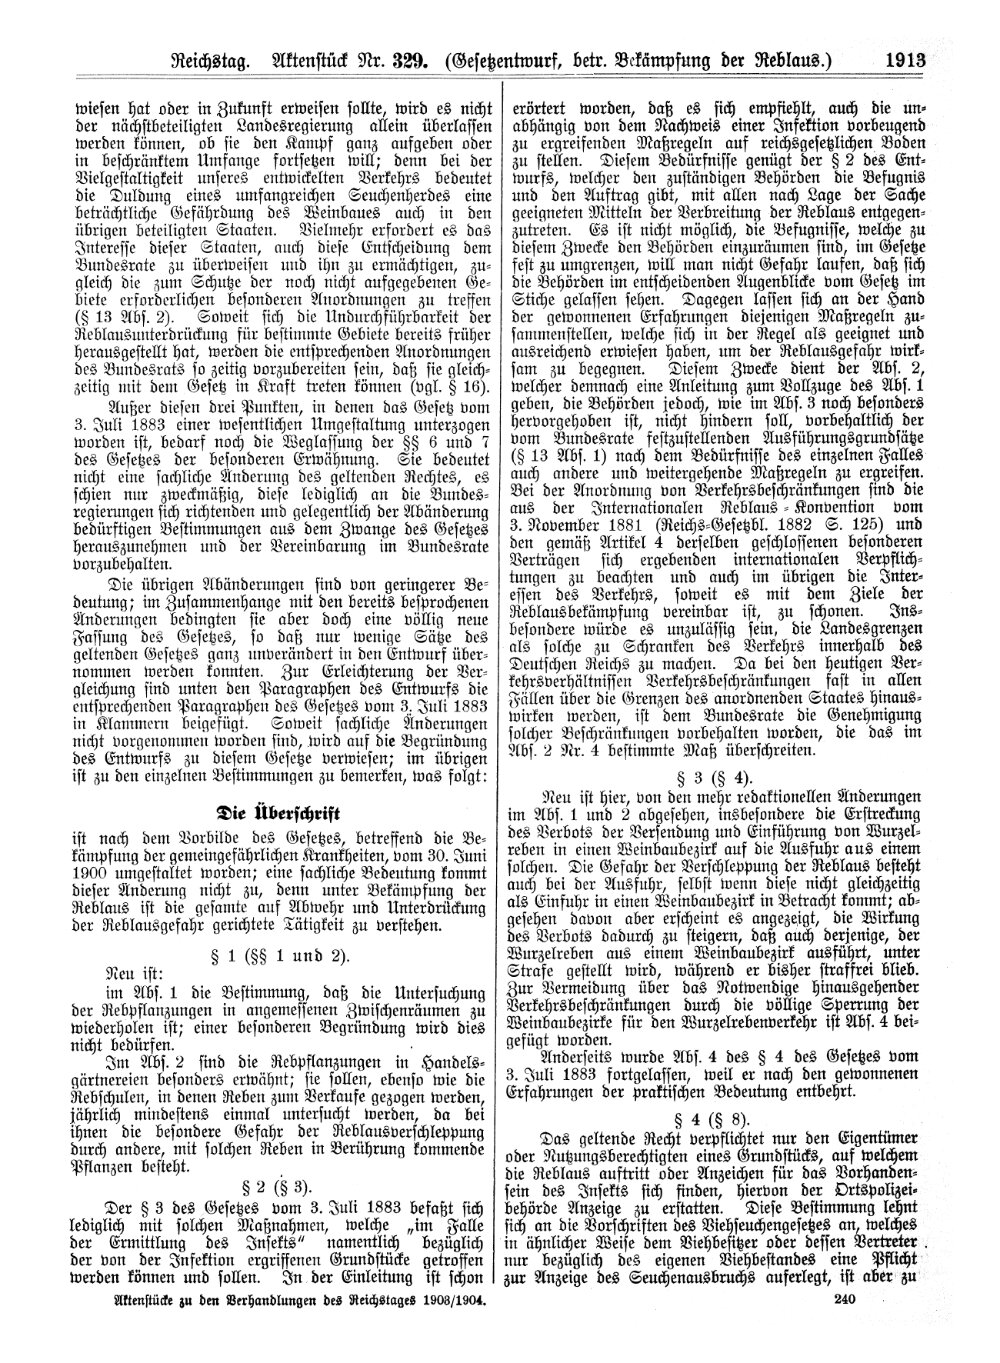 Scan der Seite 1913